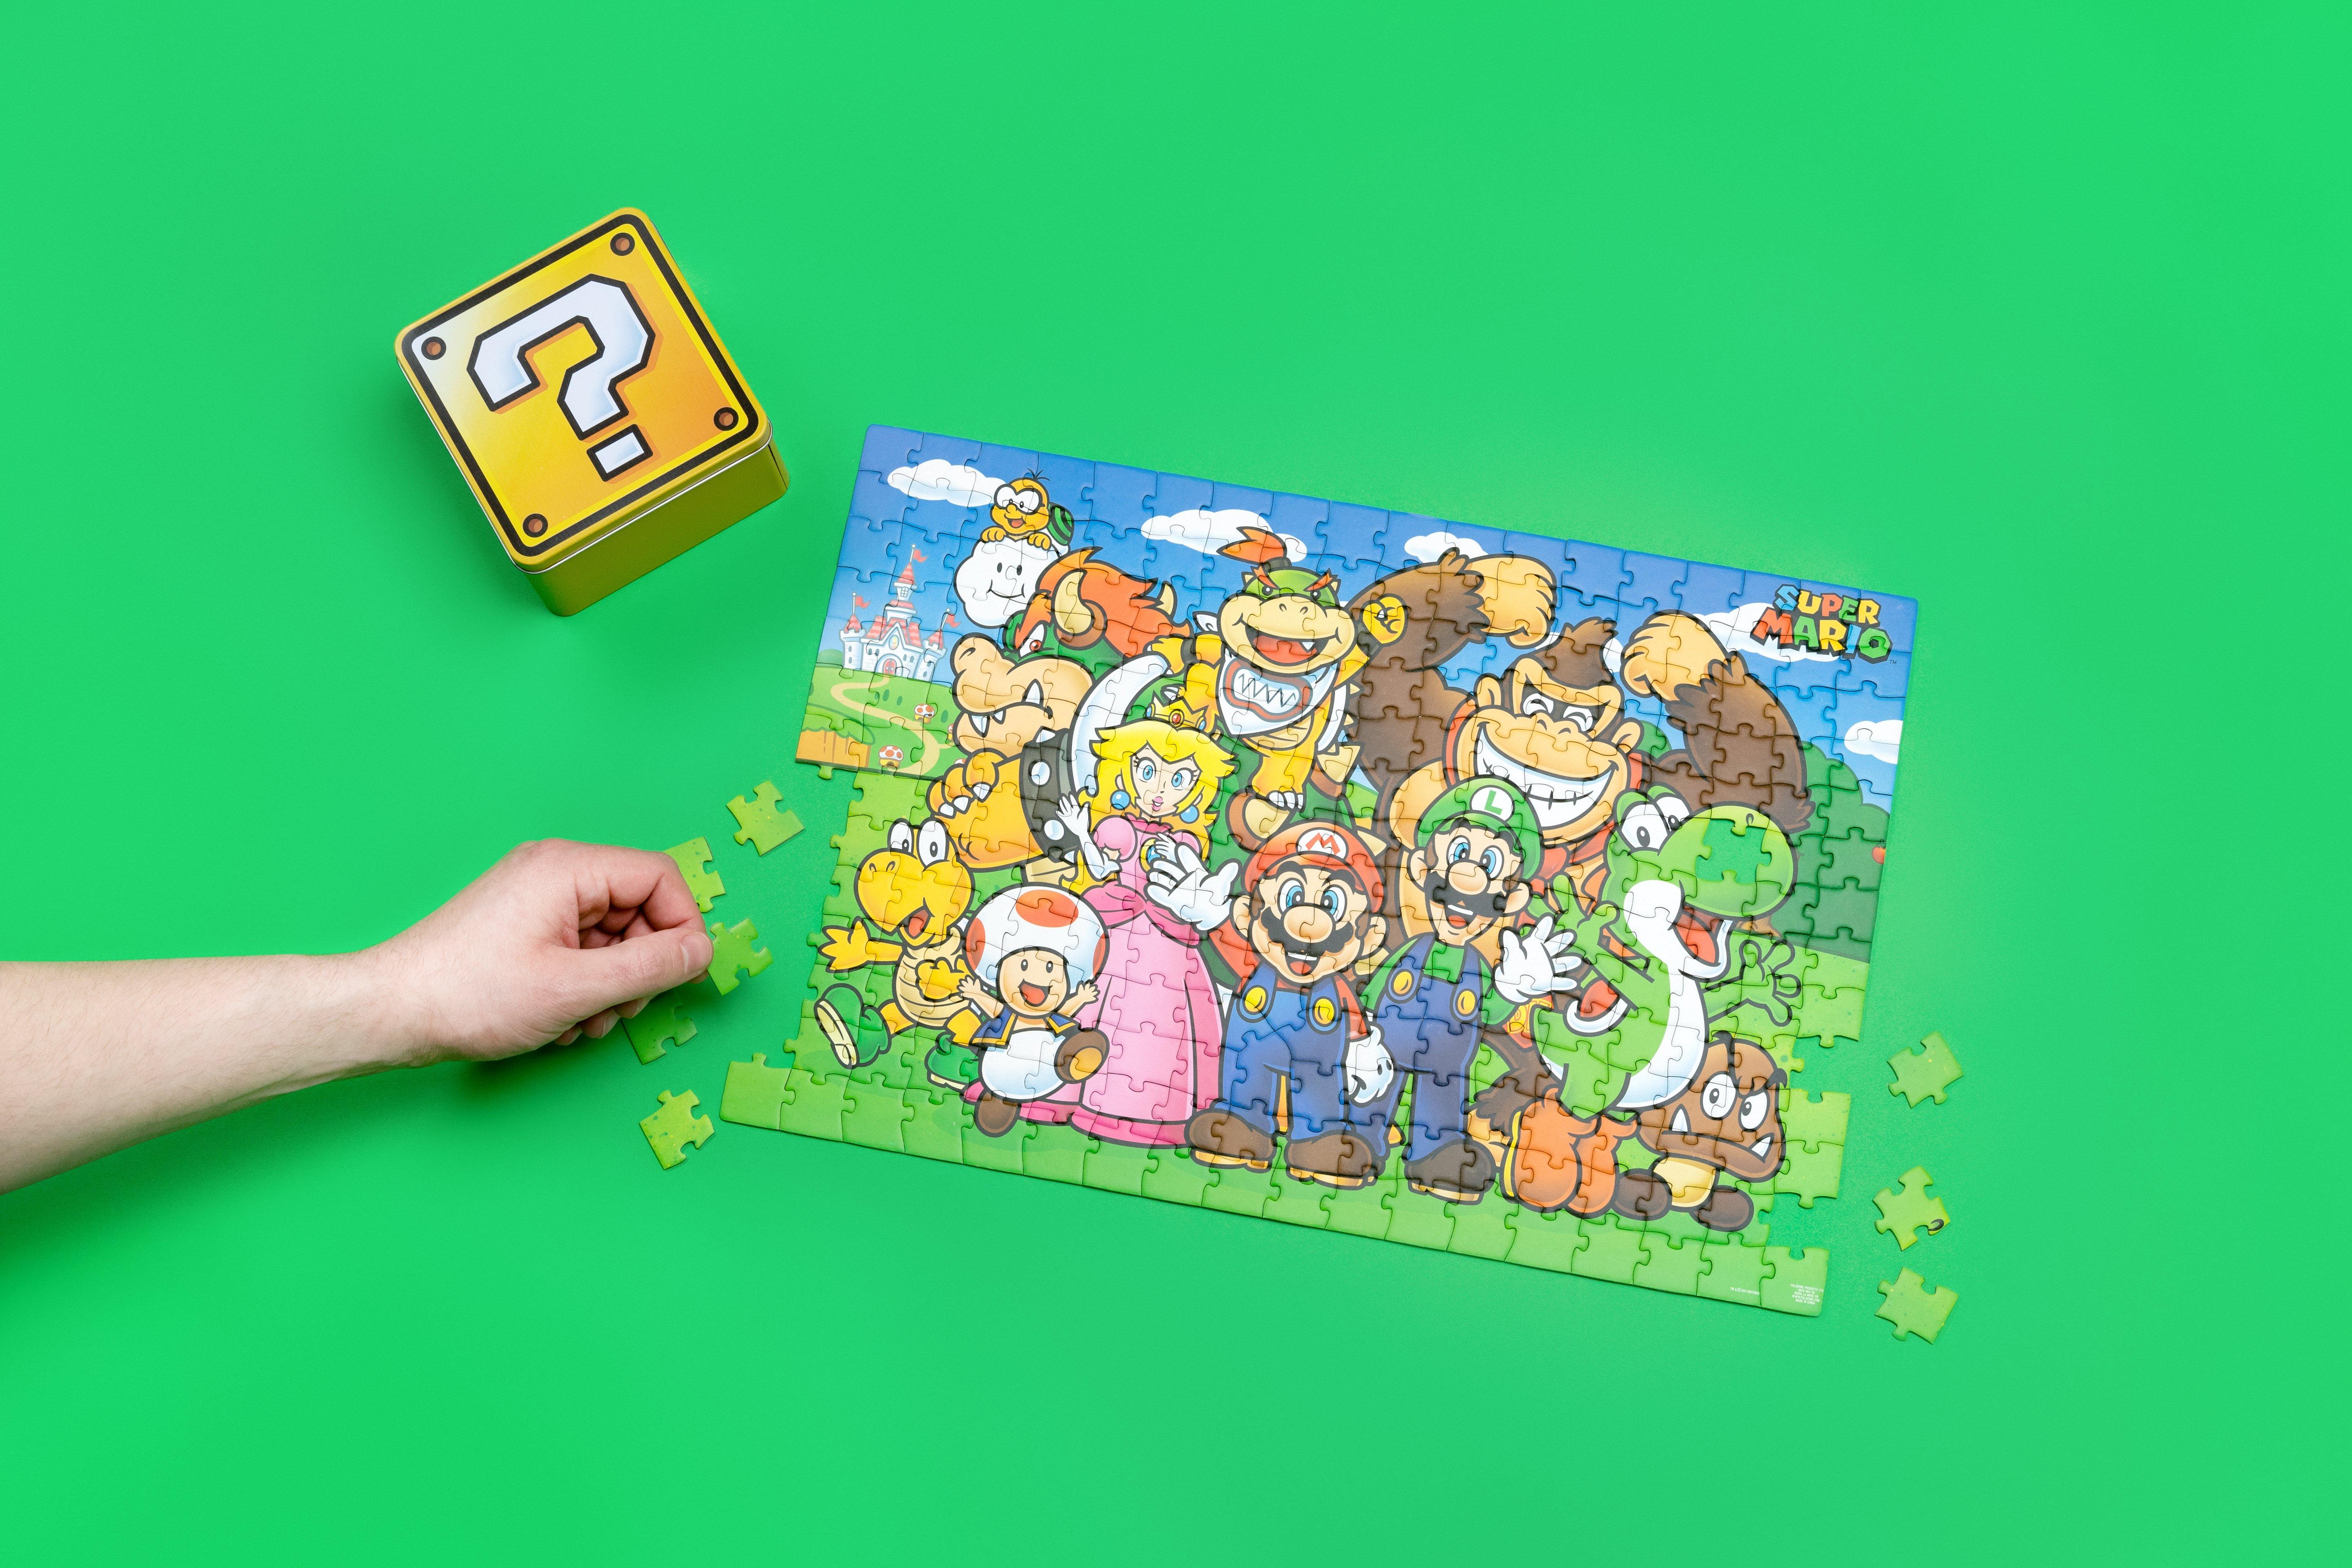 https://media.gamestop.com/i/gamestop/20002372_ALT03/Super-Mario-250-Piece-Jigsaw-Puzzle?$pdp$